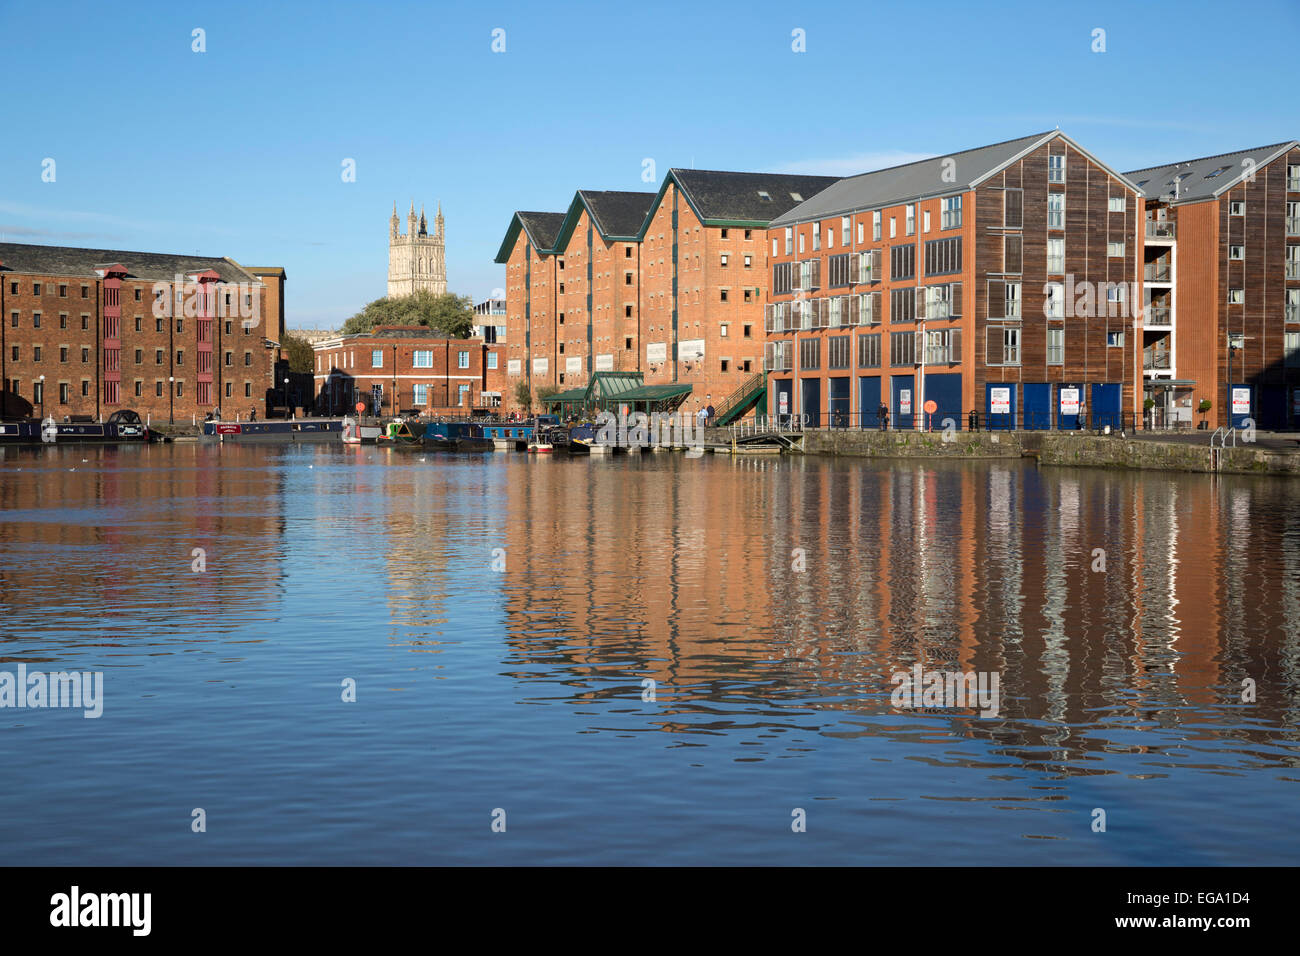 Ehemaligen Lagerhallen und Kathedrale von Gloucester, Gloucester Quays, Gloucester, Gloucestershire, England, Vereinigtes Königreich, Europa Stockfoto